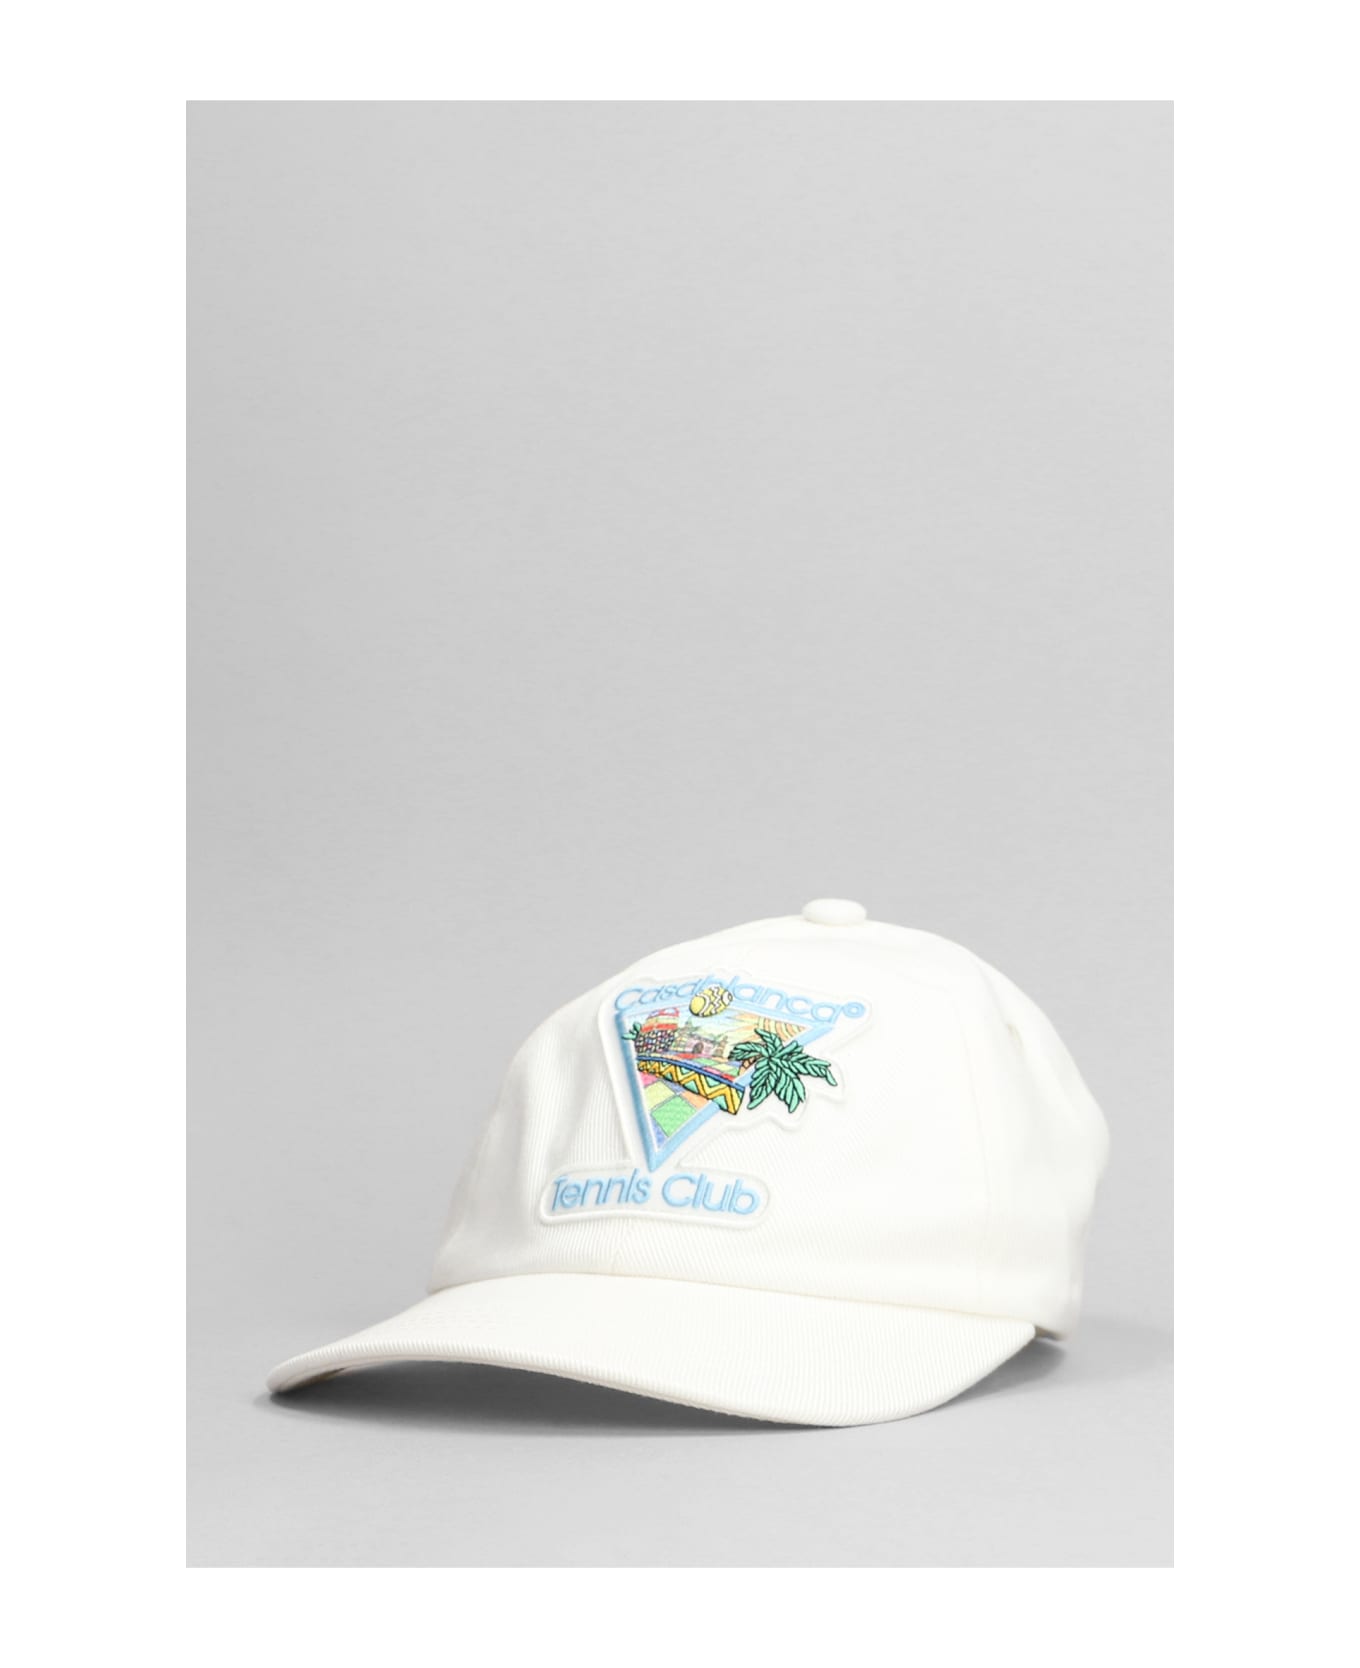 Casablanca Afro Cubism Tennis Club Cap - OFF-WHITE 帽子